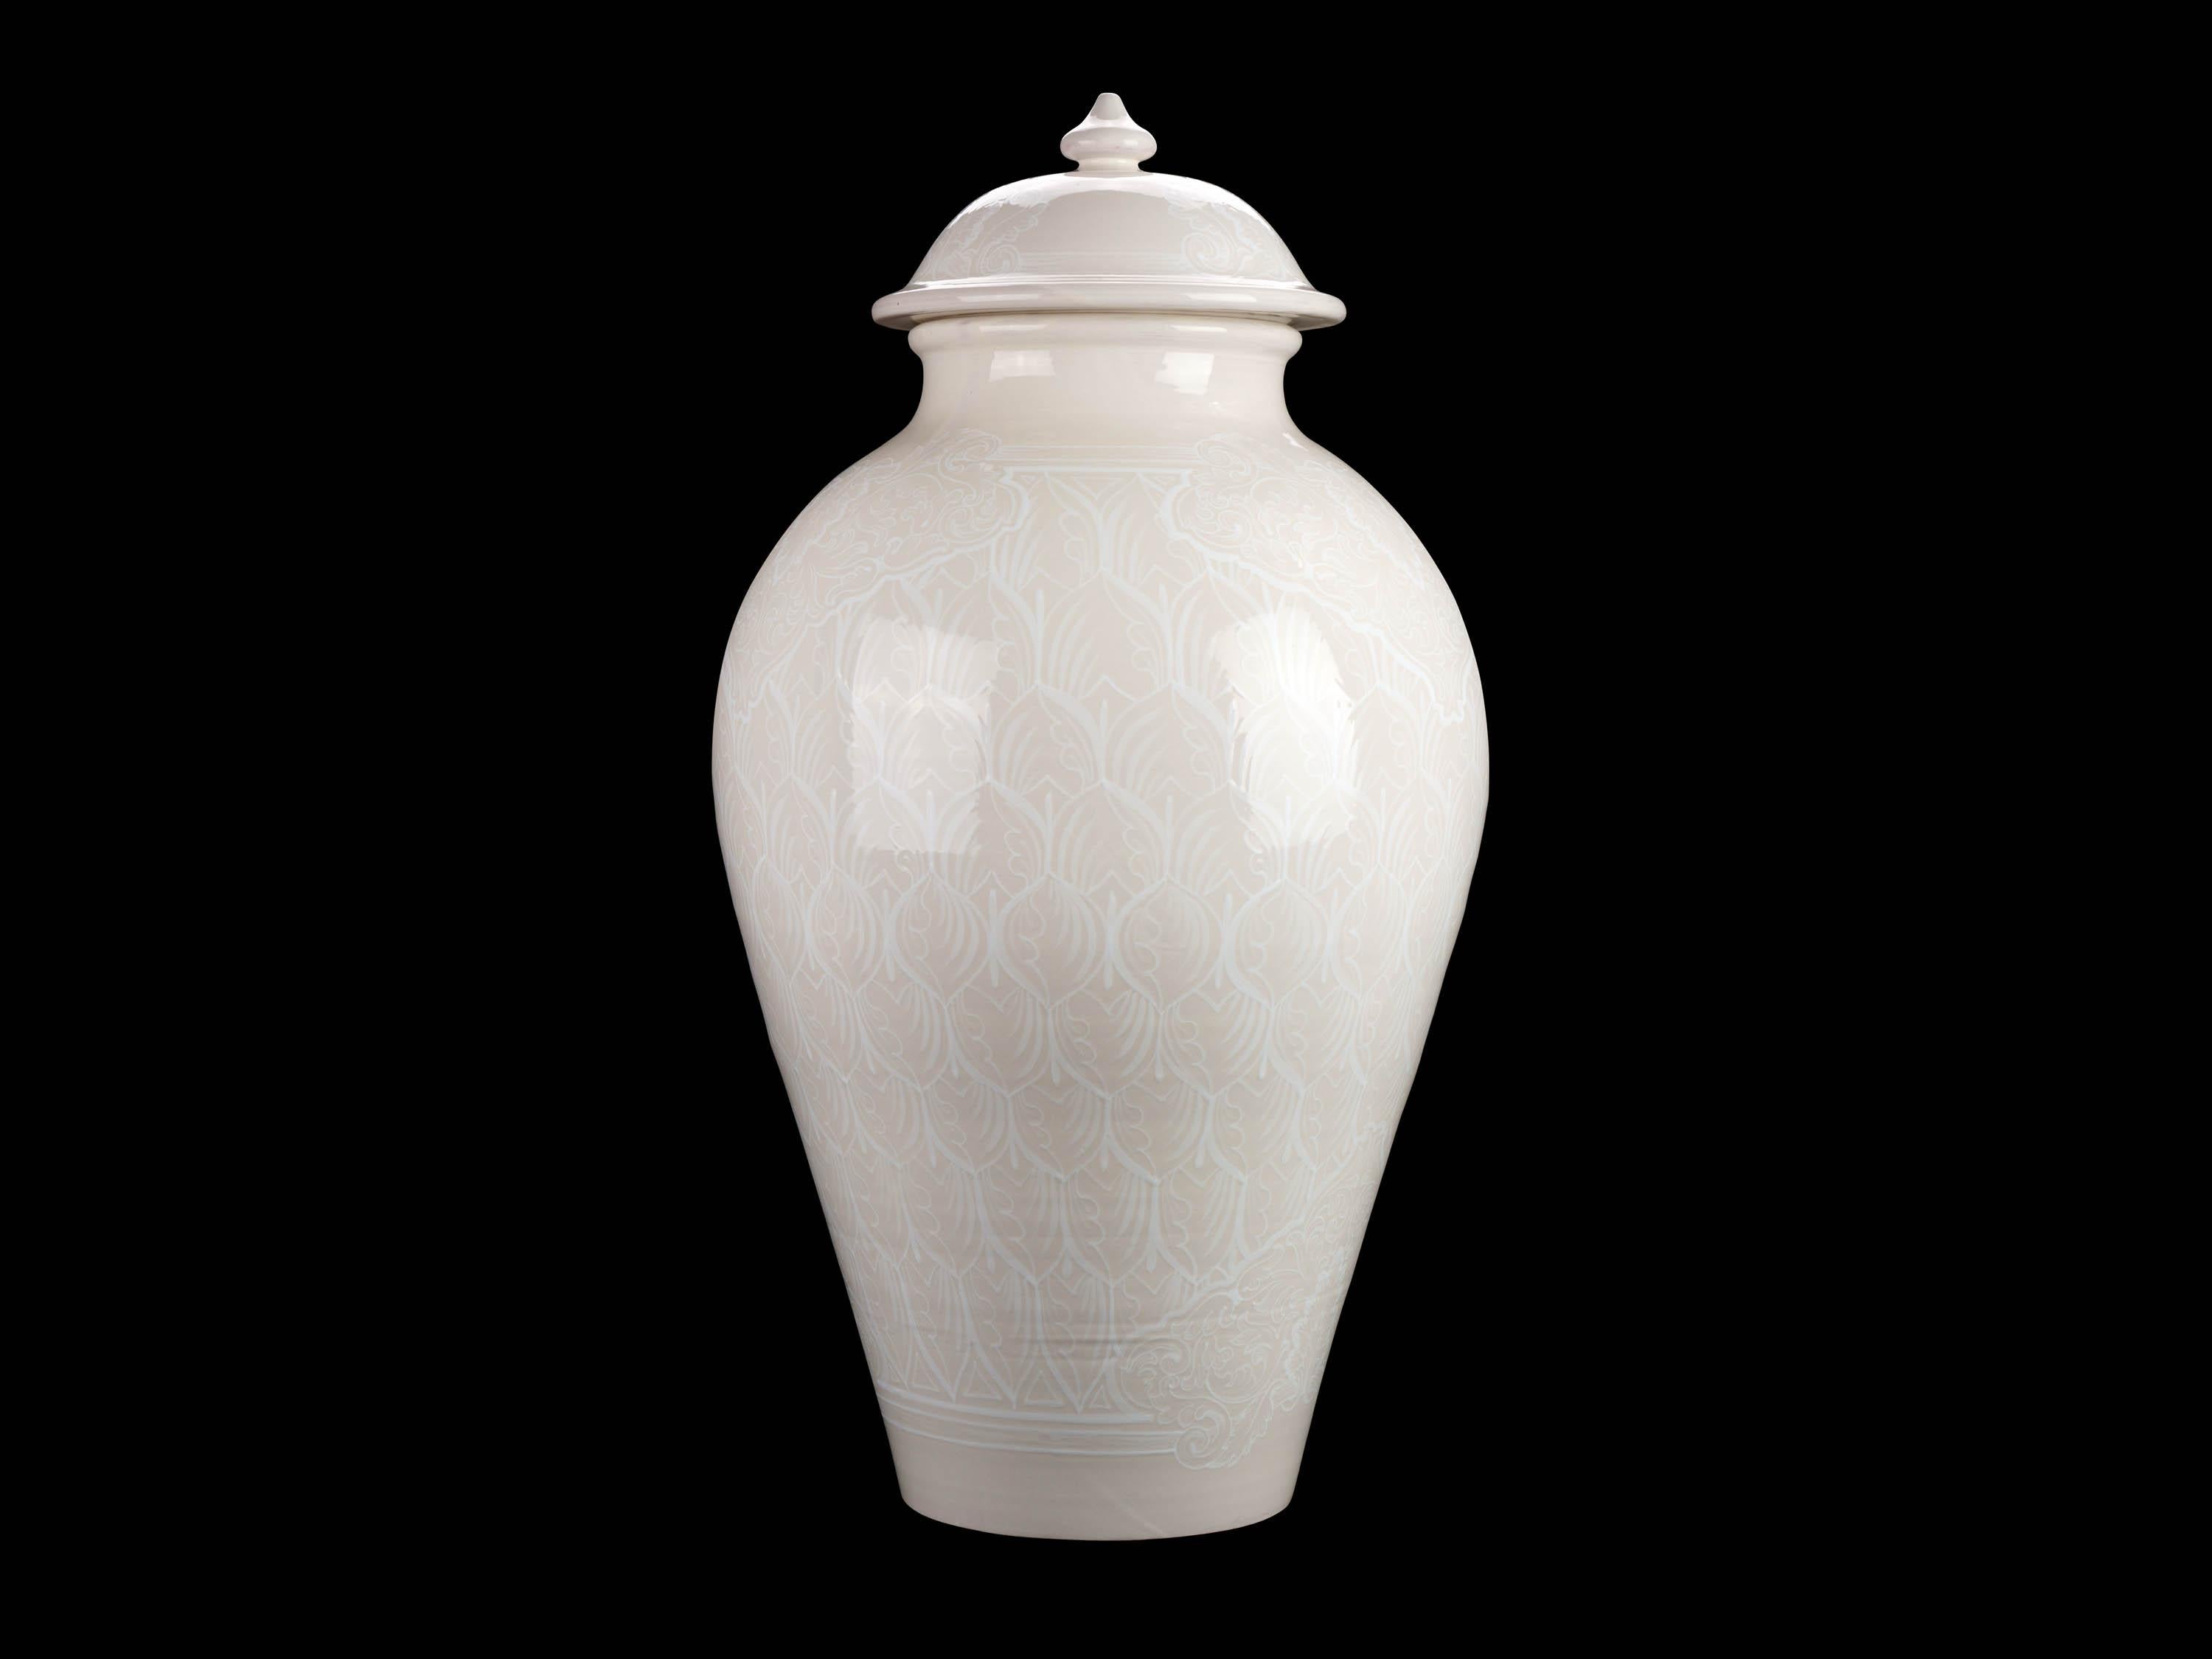 Ceramic Vase Potiche Jar Lid Decorated Ornament Decorative Majolica Total White Vessel For Sale